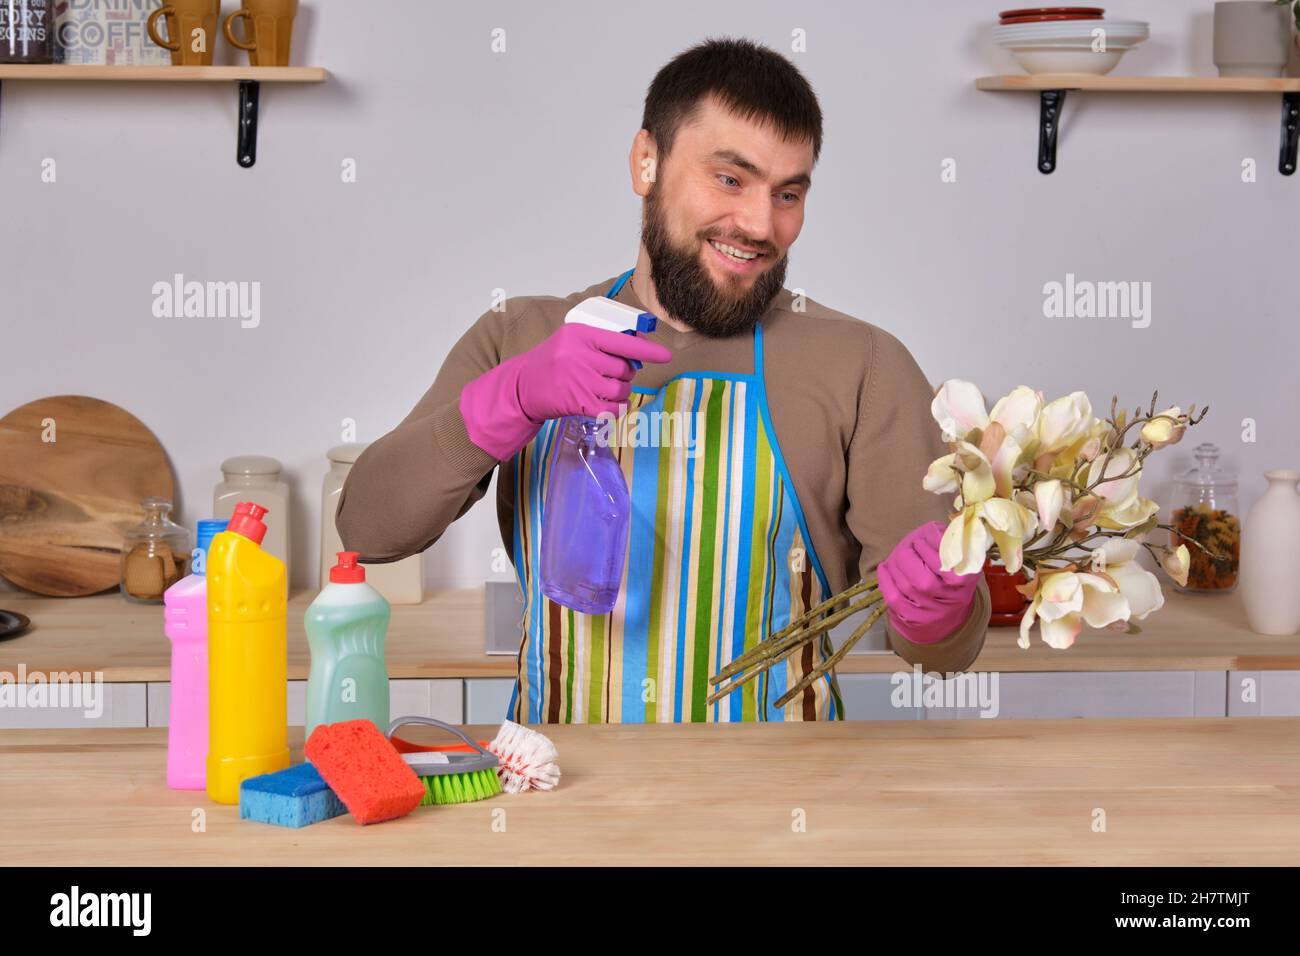 Junger, hübscher bärtiger Mann in der Küche zeigt alle seine Reinigungskräfte - Waschmittel, Bürsten, Sprays. Er denkt, er sei bereit für eine echte Reinigung Stockfoto